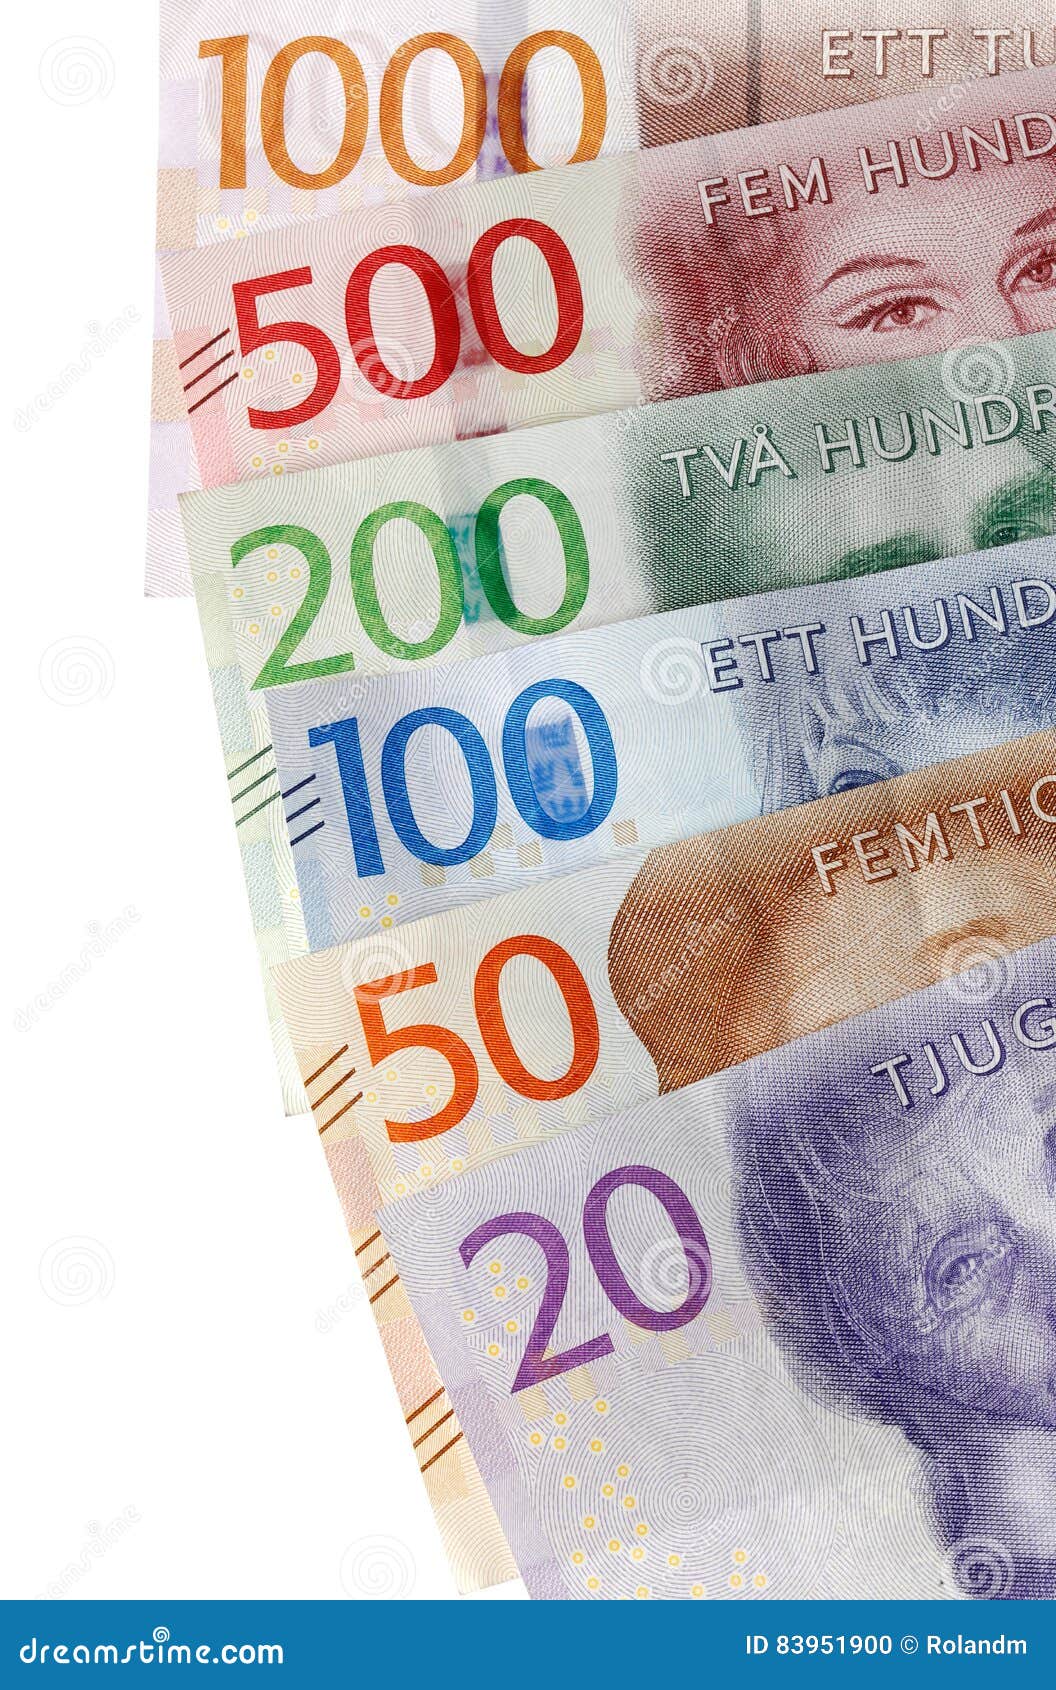 货币瑞典 库存照片. 图片 包括有 班卓琵琶, 商业, 硬币, 斯德哥尔摩, 瑞典, 财务, 瑞典语, 货币 - 11095236